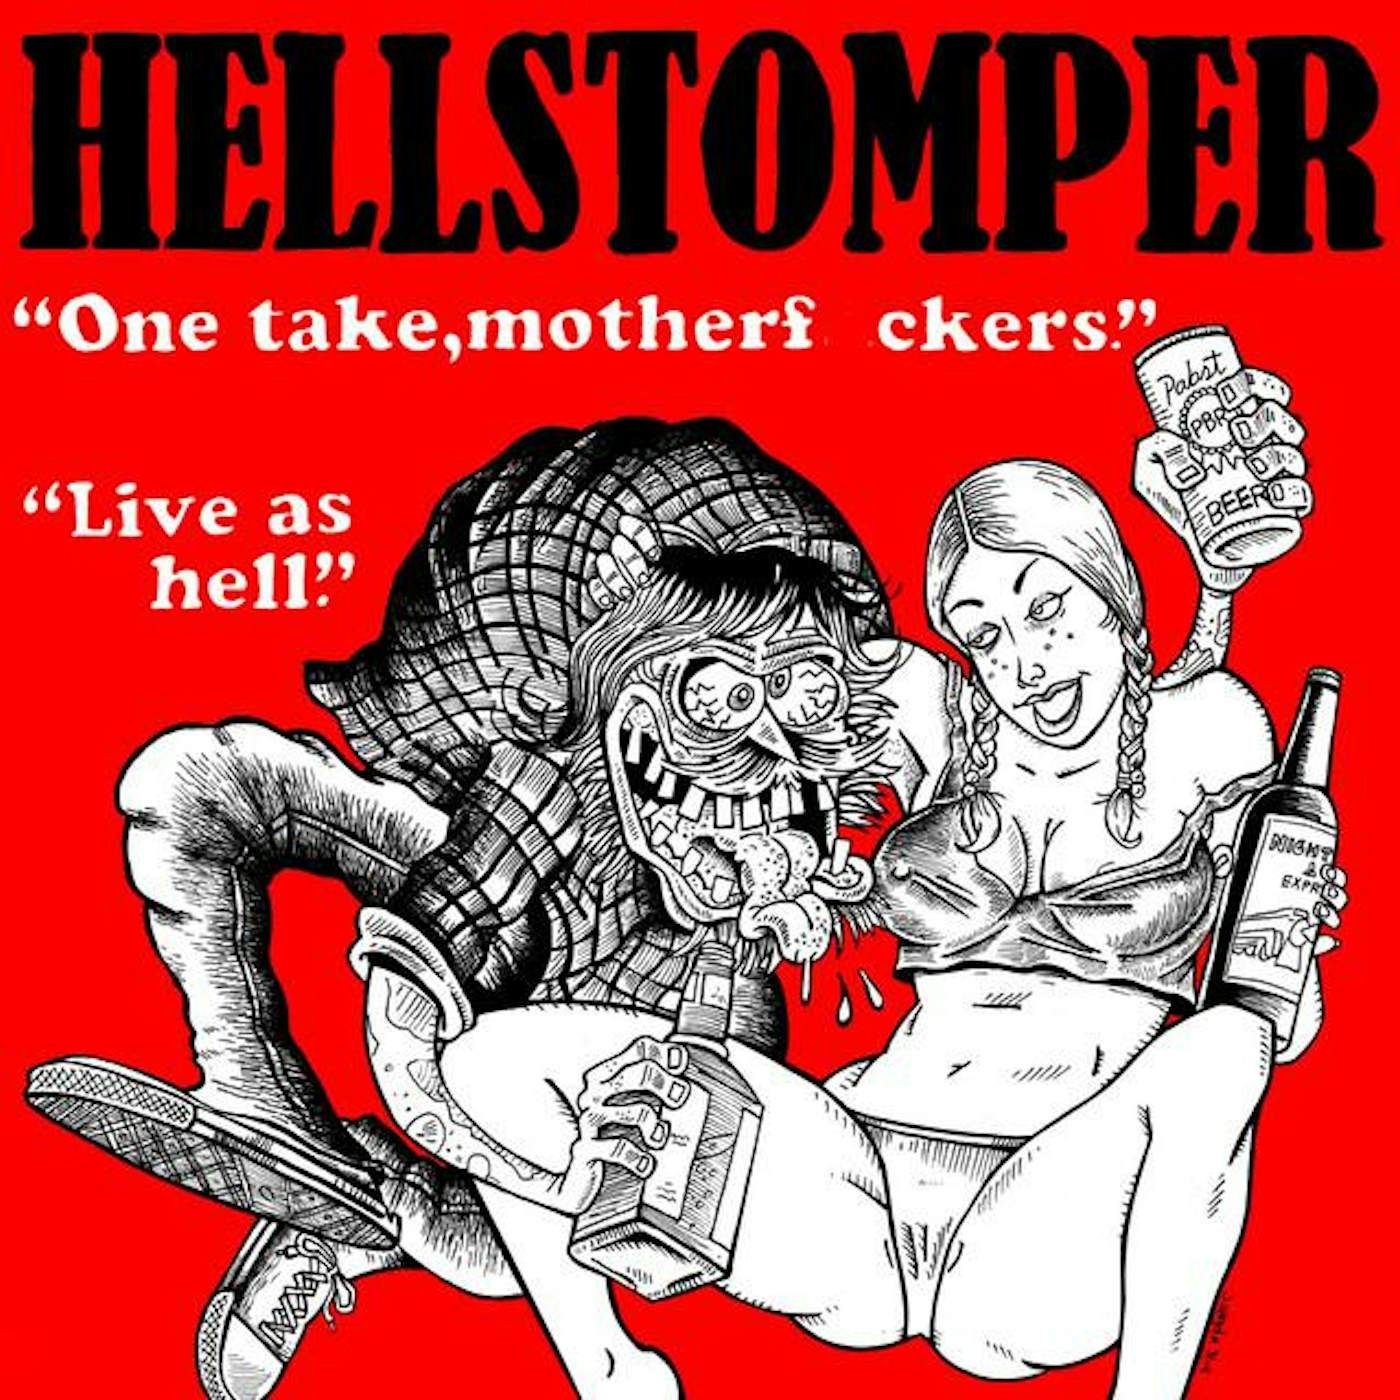 Hellstomper